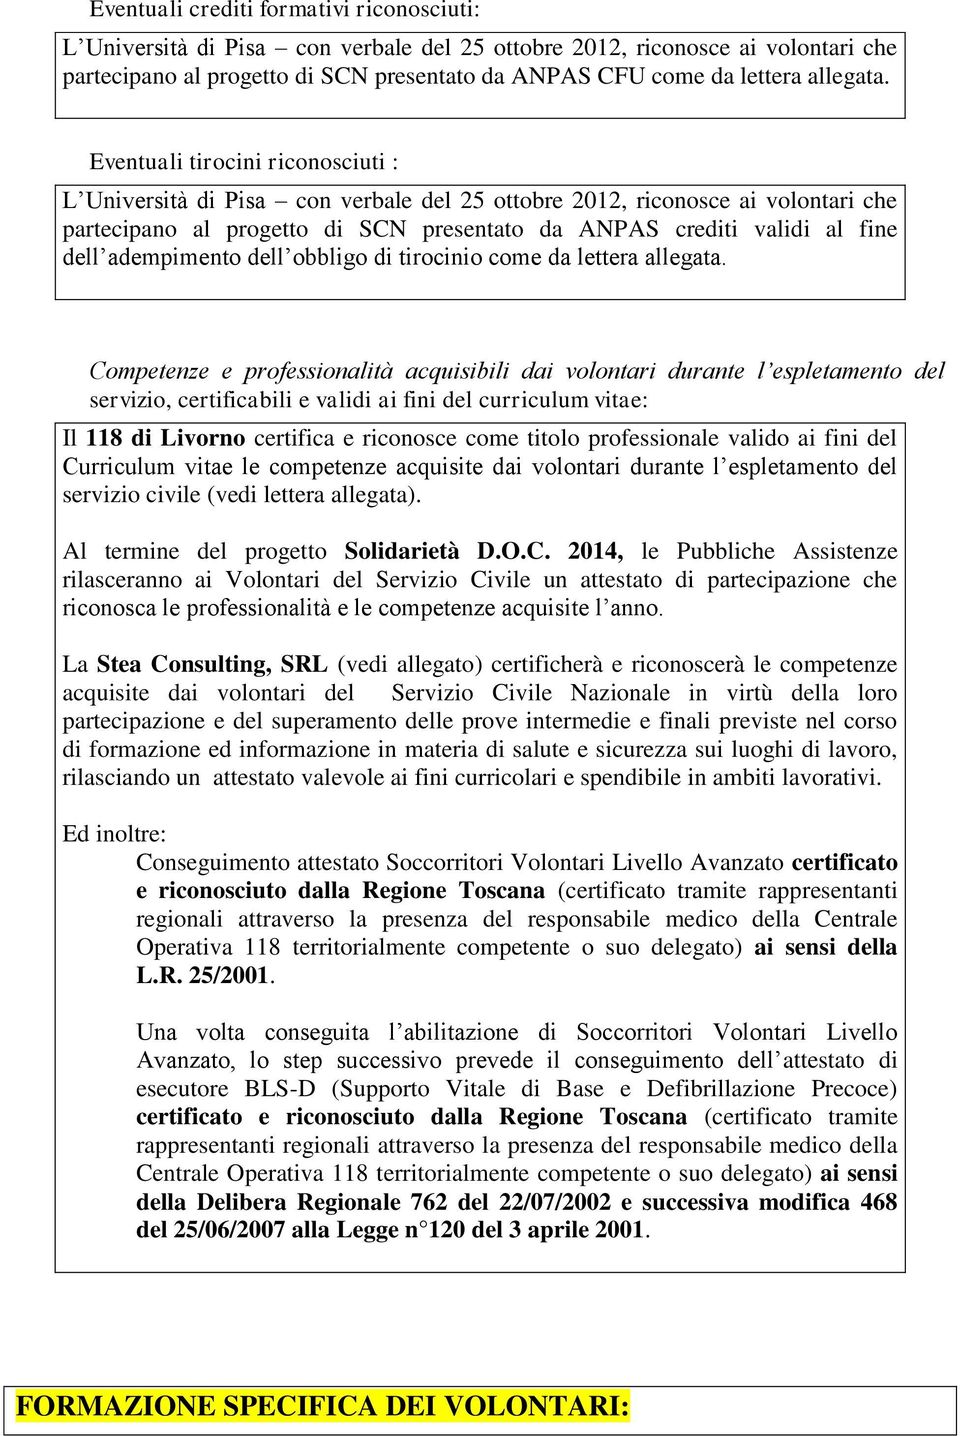 Eventuali tirocini riconosciuti : L Università di Pisa con verbale del 25 ottobre 2012, riconosce ai volontari che partecipano al progetto di SCN presentato da ANPAS crediti validi al fine dell